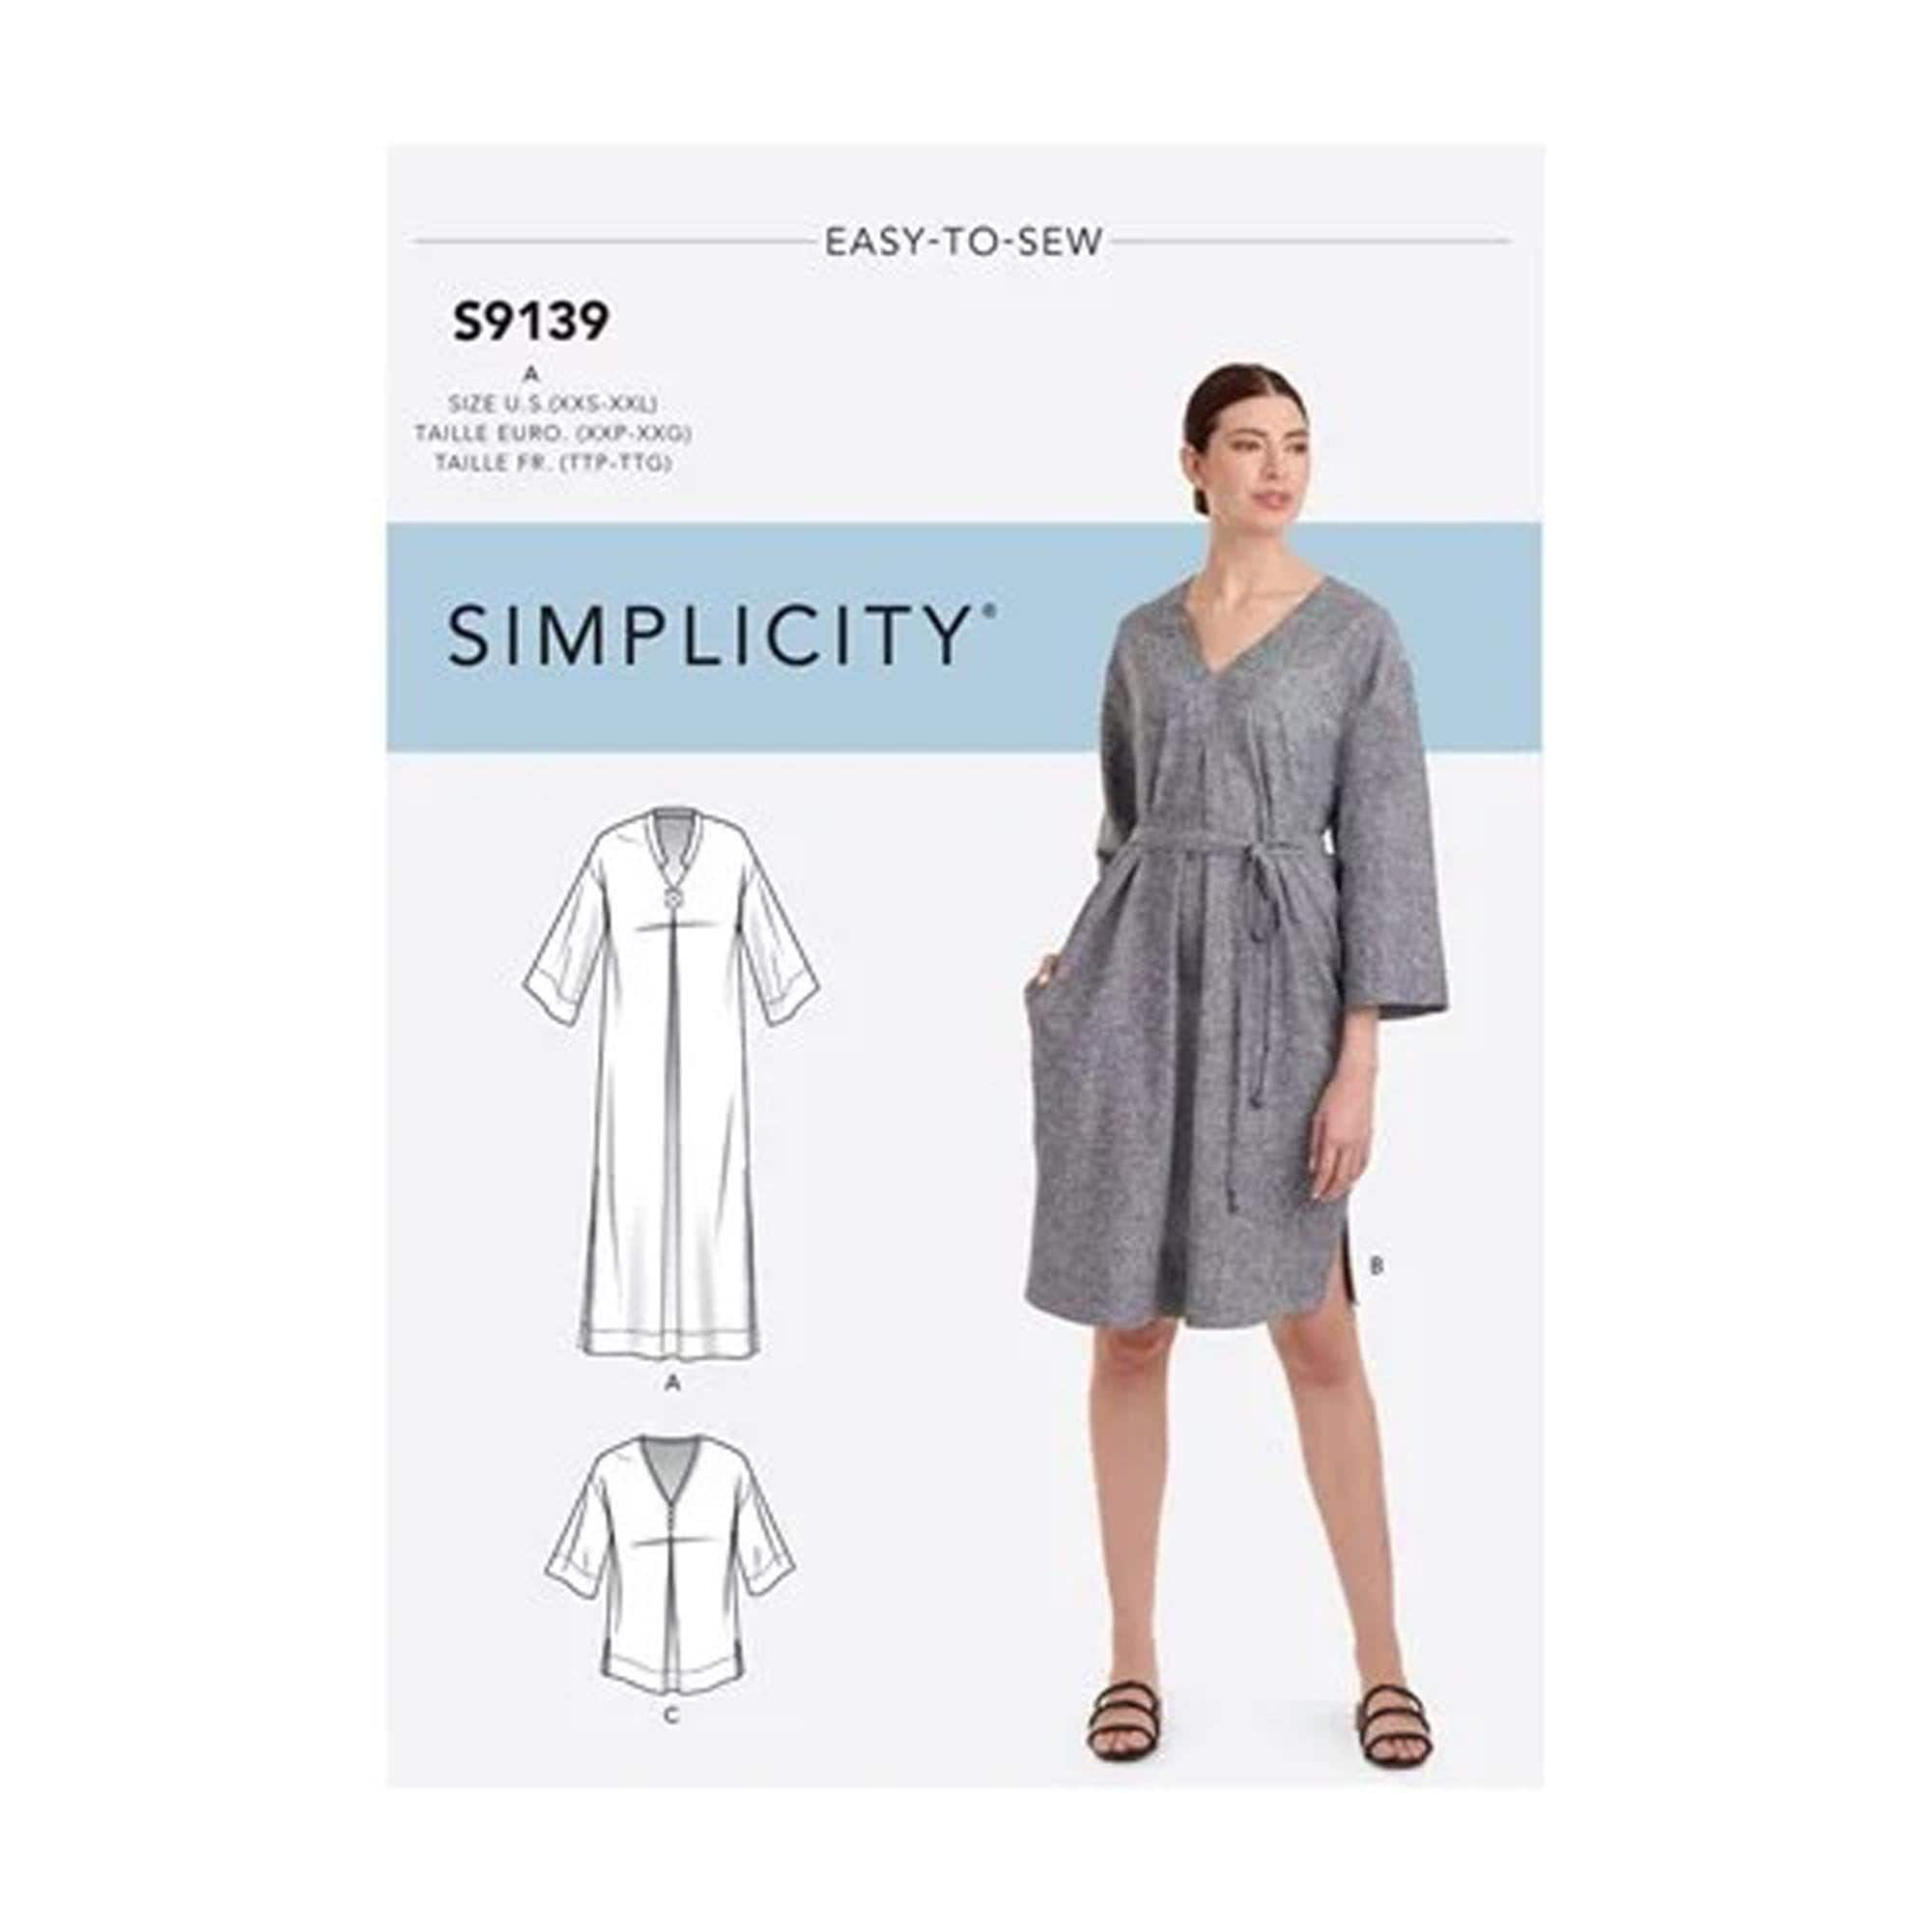 Caftan Tunic Dress Simplicity UNCUT 8960 sizes 14-22 or 6-14 Misses & Women's Plus Tops